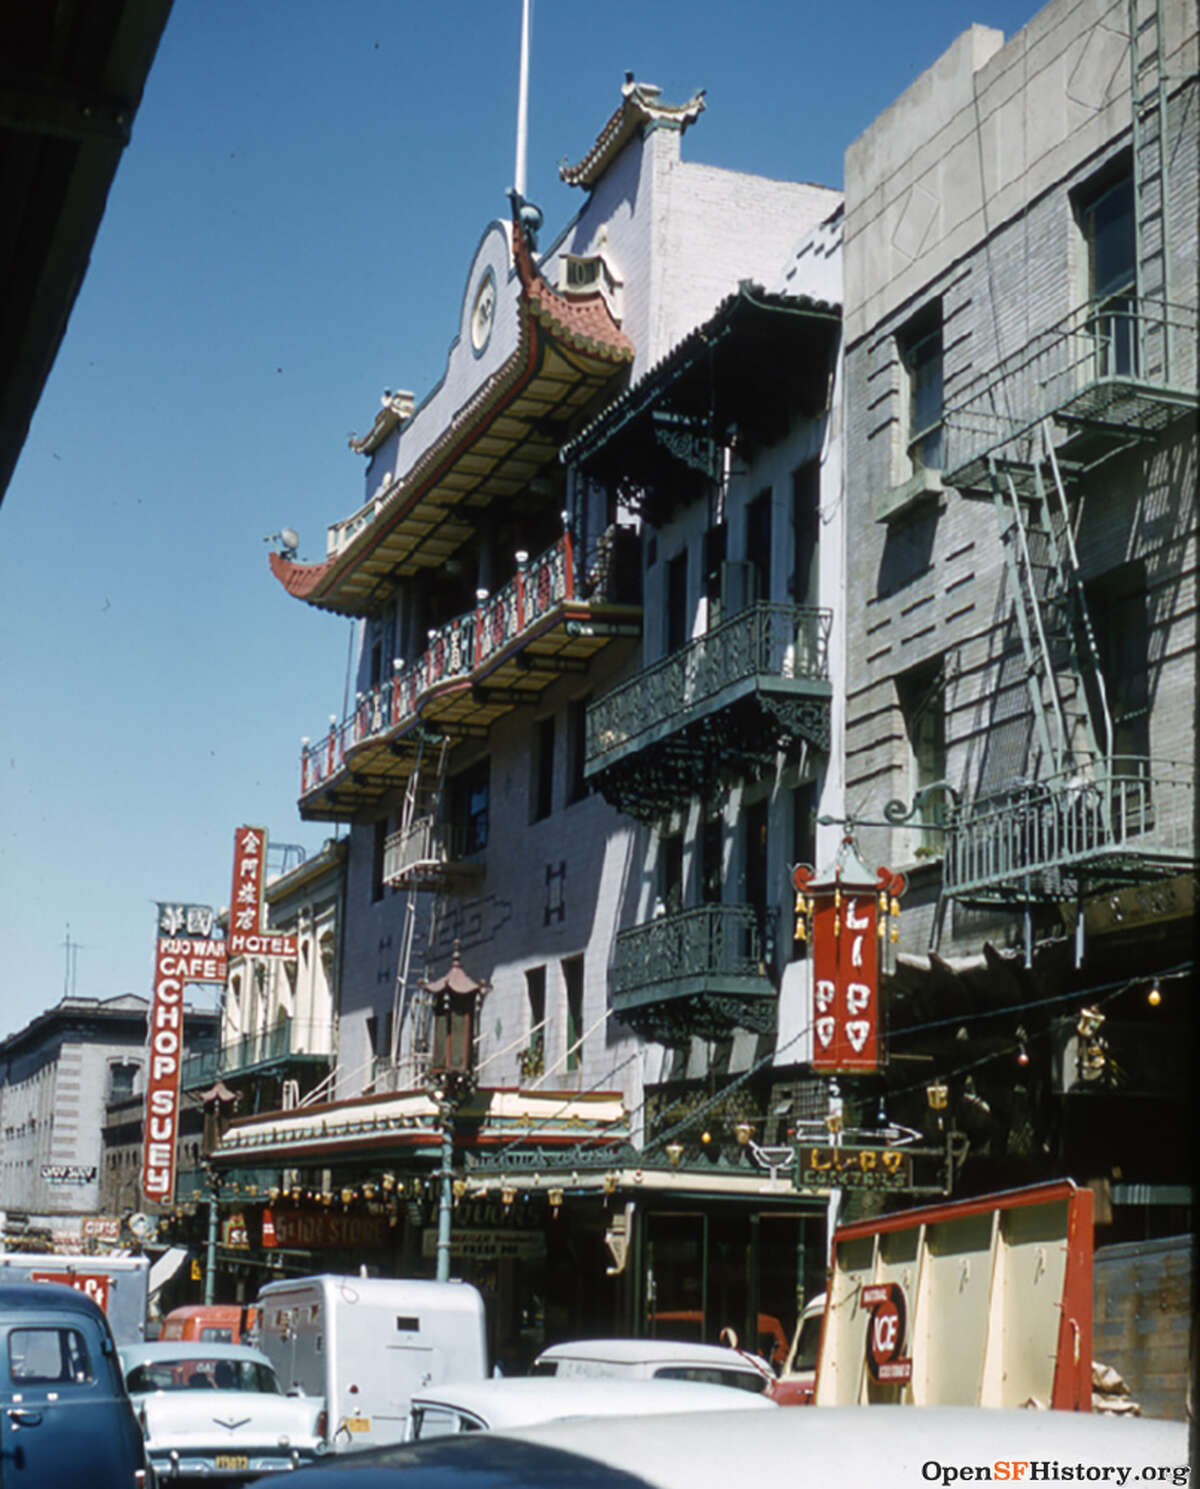 Grant Avenue en Chinatown, alrededor de 1957, con una vista de Li Po Cocktail Lounge, abajo a la derecha.